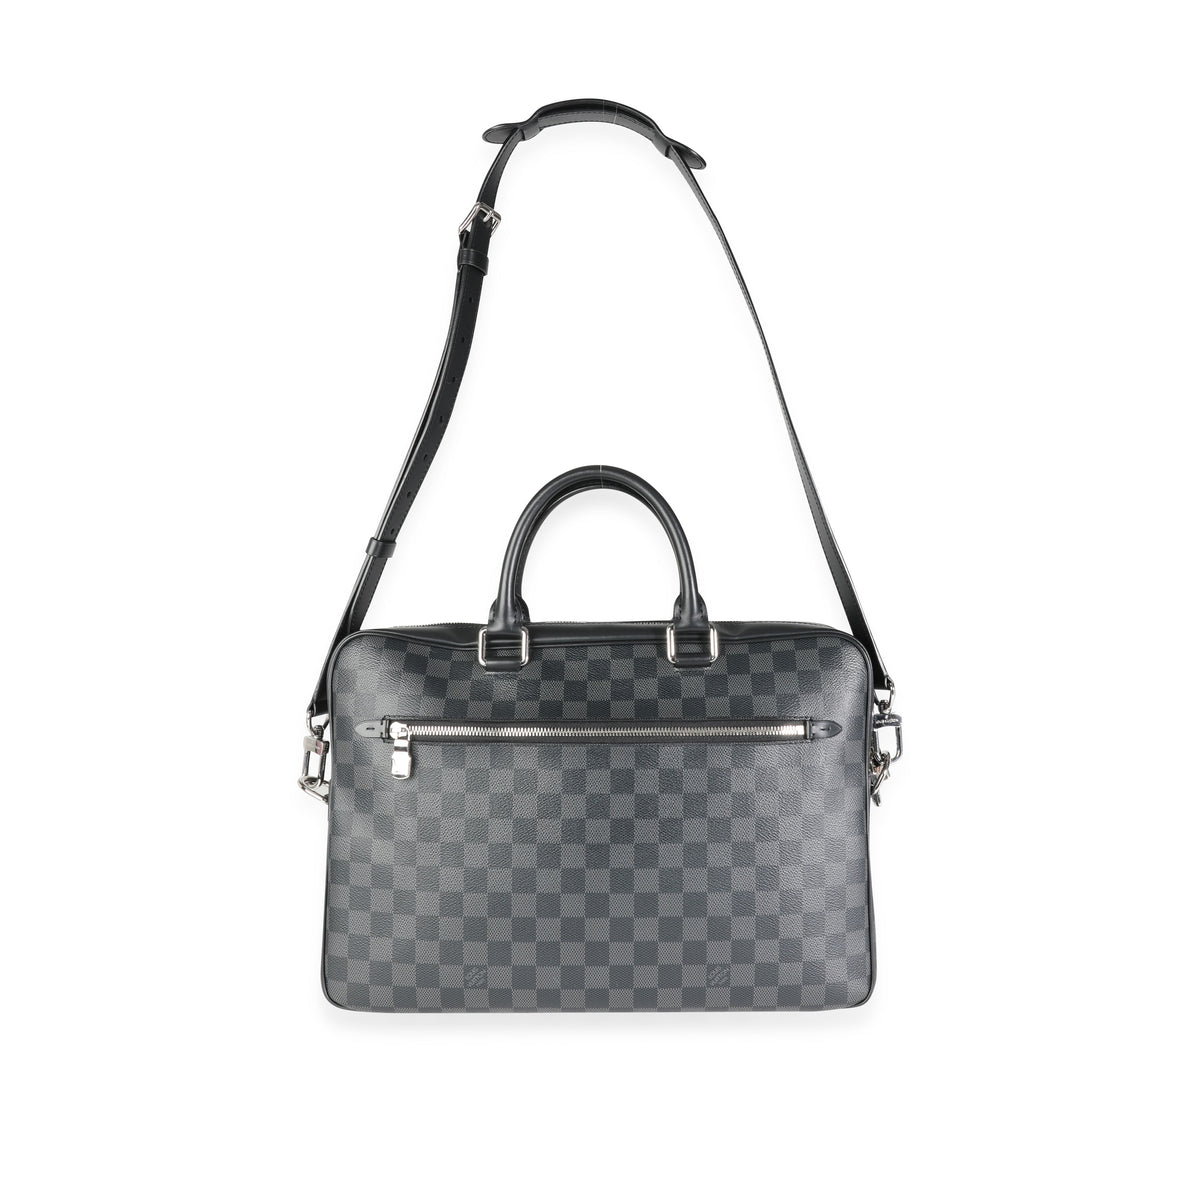 Louis Vuitton 2019 Pre-owned Porte Documents mm Bag - Black